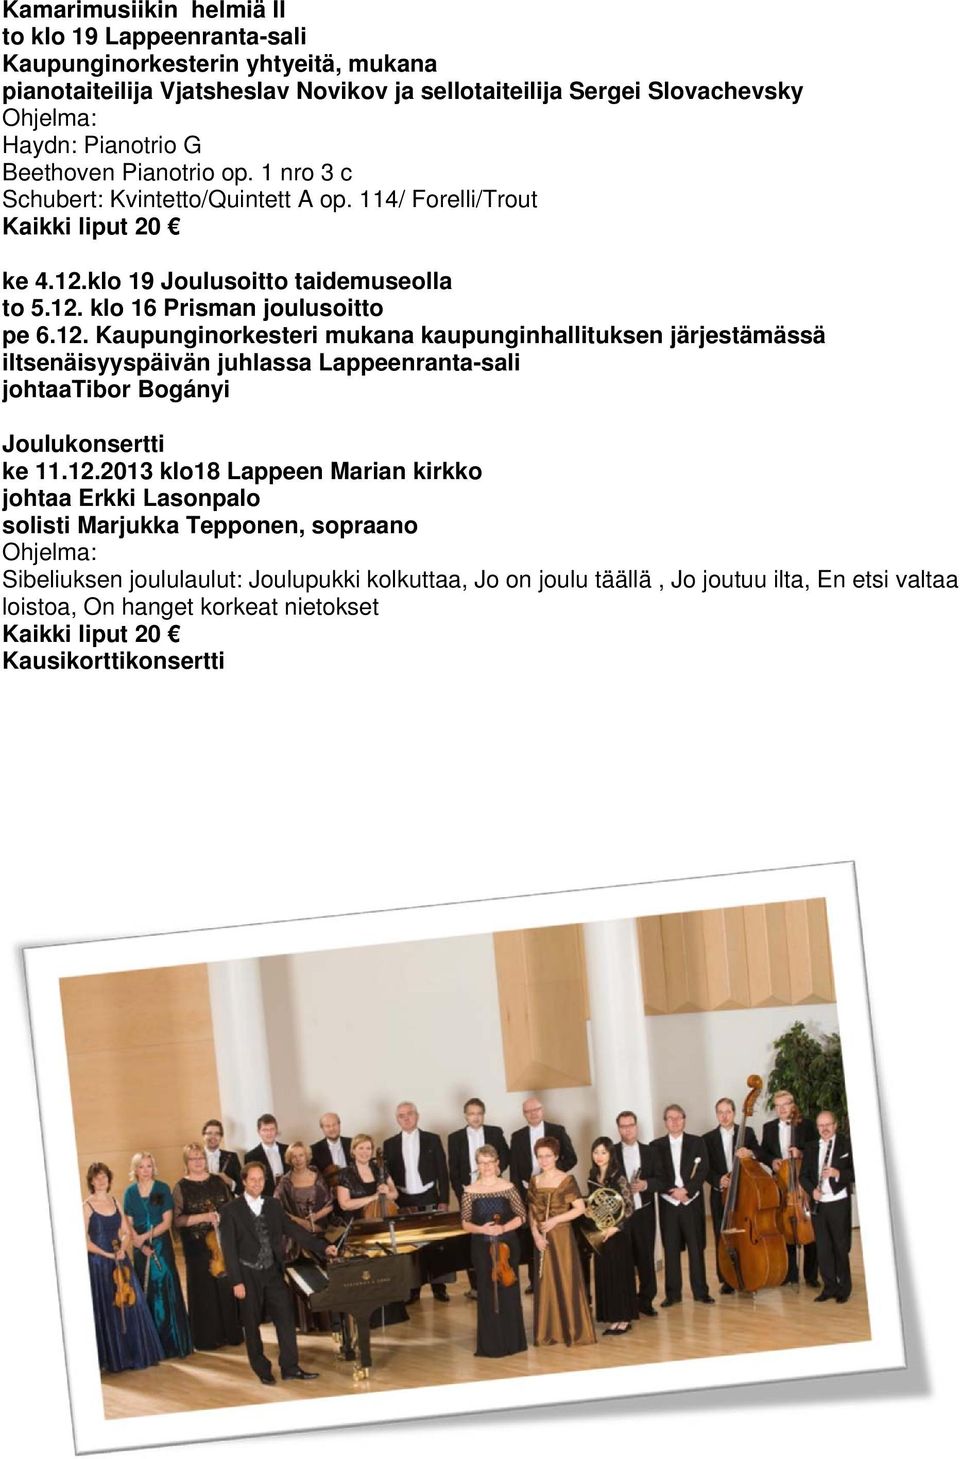 klo 19 Joulusoitto taidemuseolla to 5.12. klo 16 Prisman joulusoitto pe 6.12. Kaupunginorkesteri mukana kaupunginhallituksen järjestämässä iitsenäisyyspäivän juhlassa Lappeenranta-sali johtaatibor Bogányi Joulukonsertti ke 11.